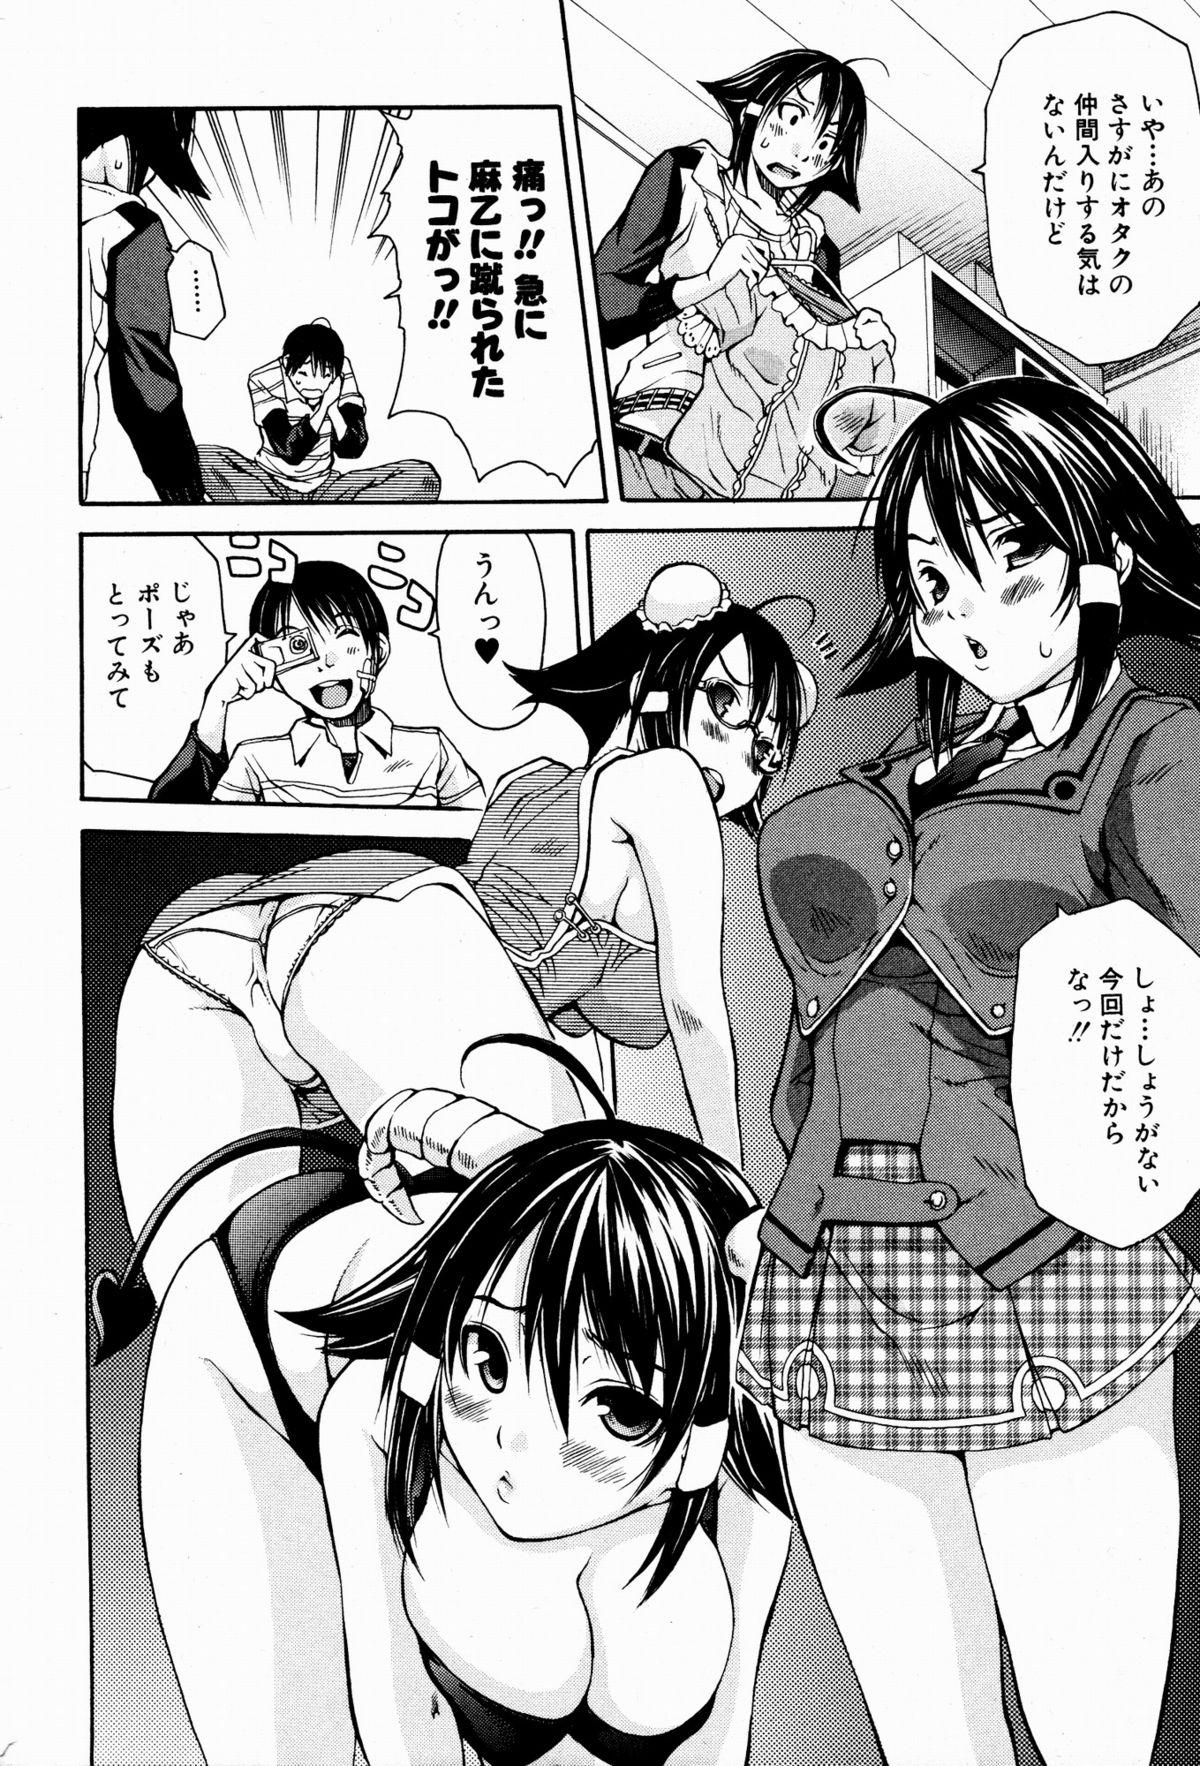 Lesbians Bishoujo Kakumei KIWAME 2009-08 Vol. 3 Anal Porn - Page 12